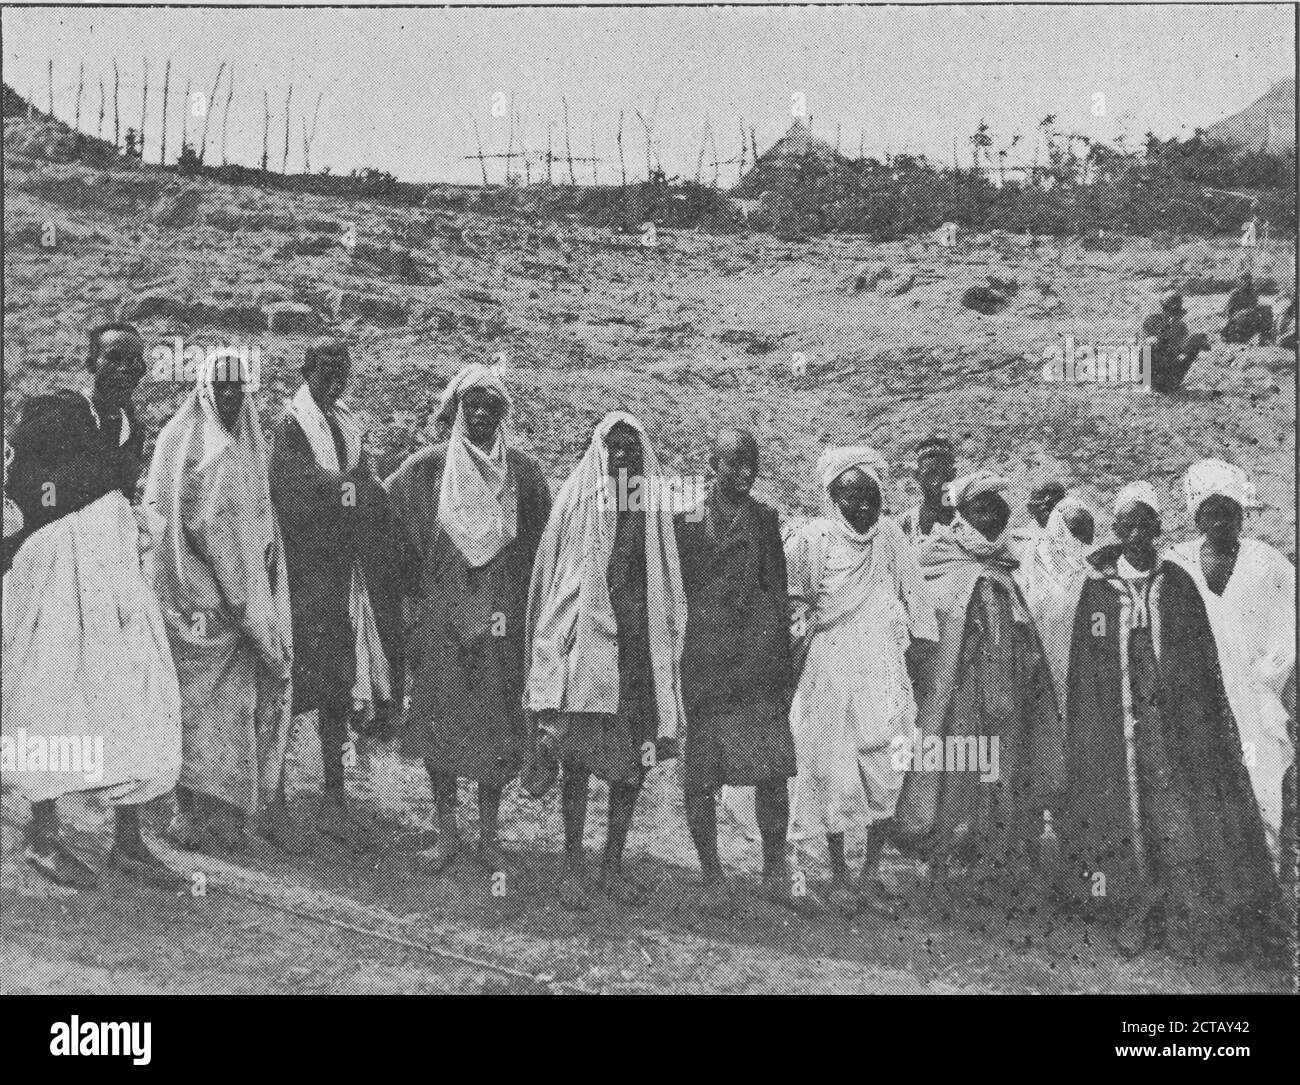 Indigènes des bords du Sénégal., still image, Photographs, 1898, Mission Hourst Stock Photo